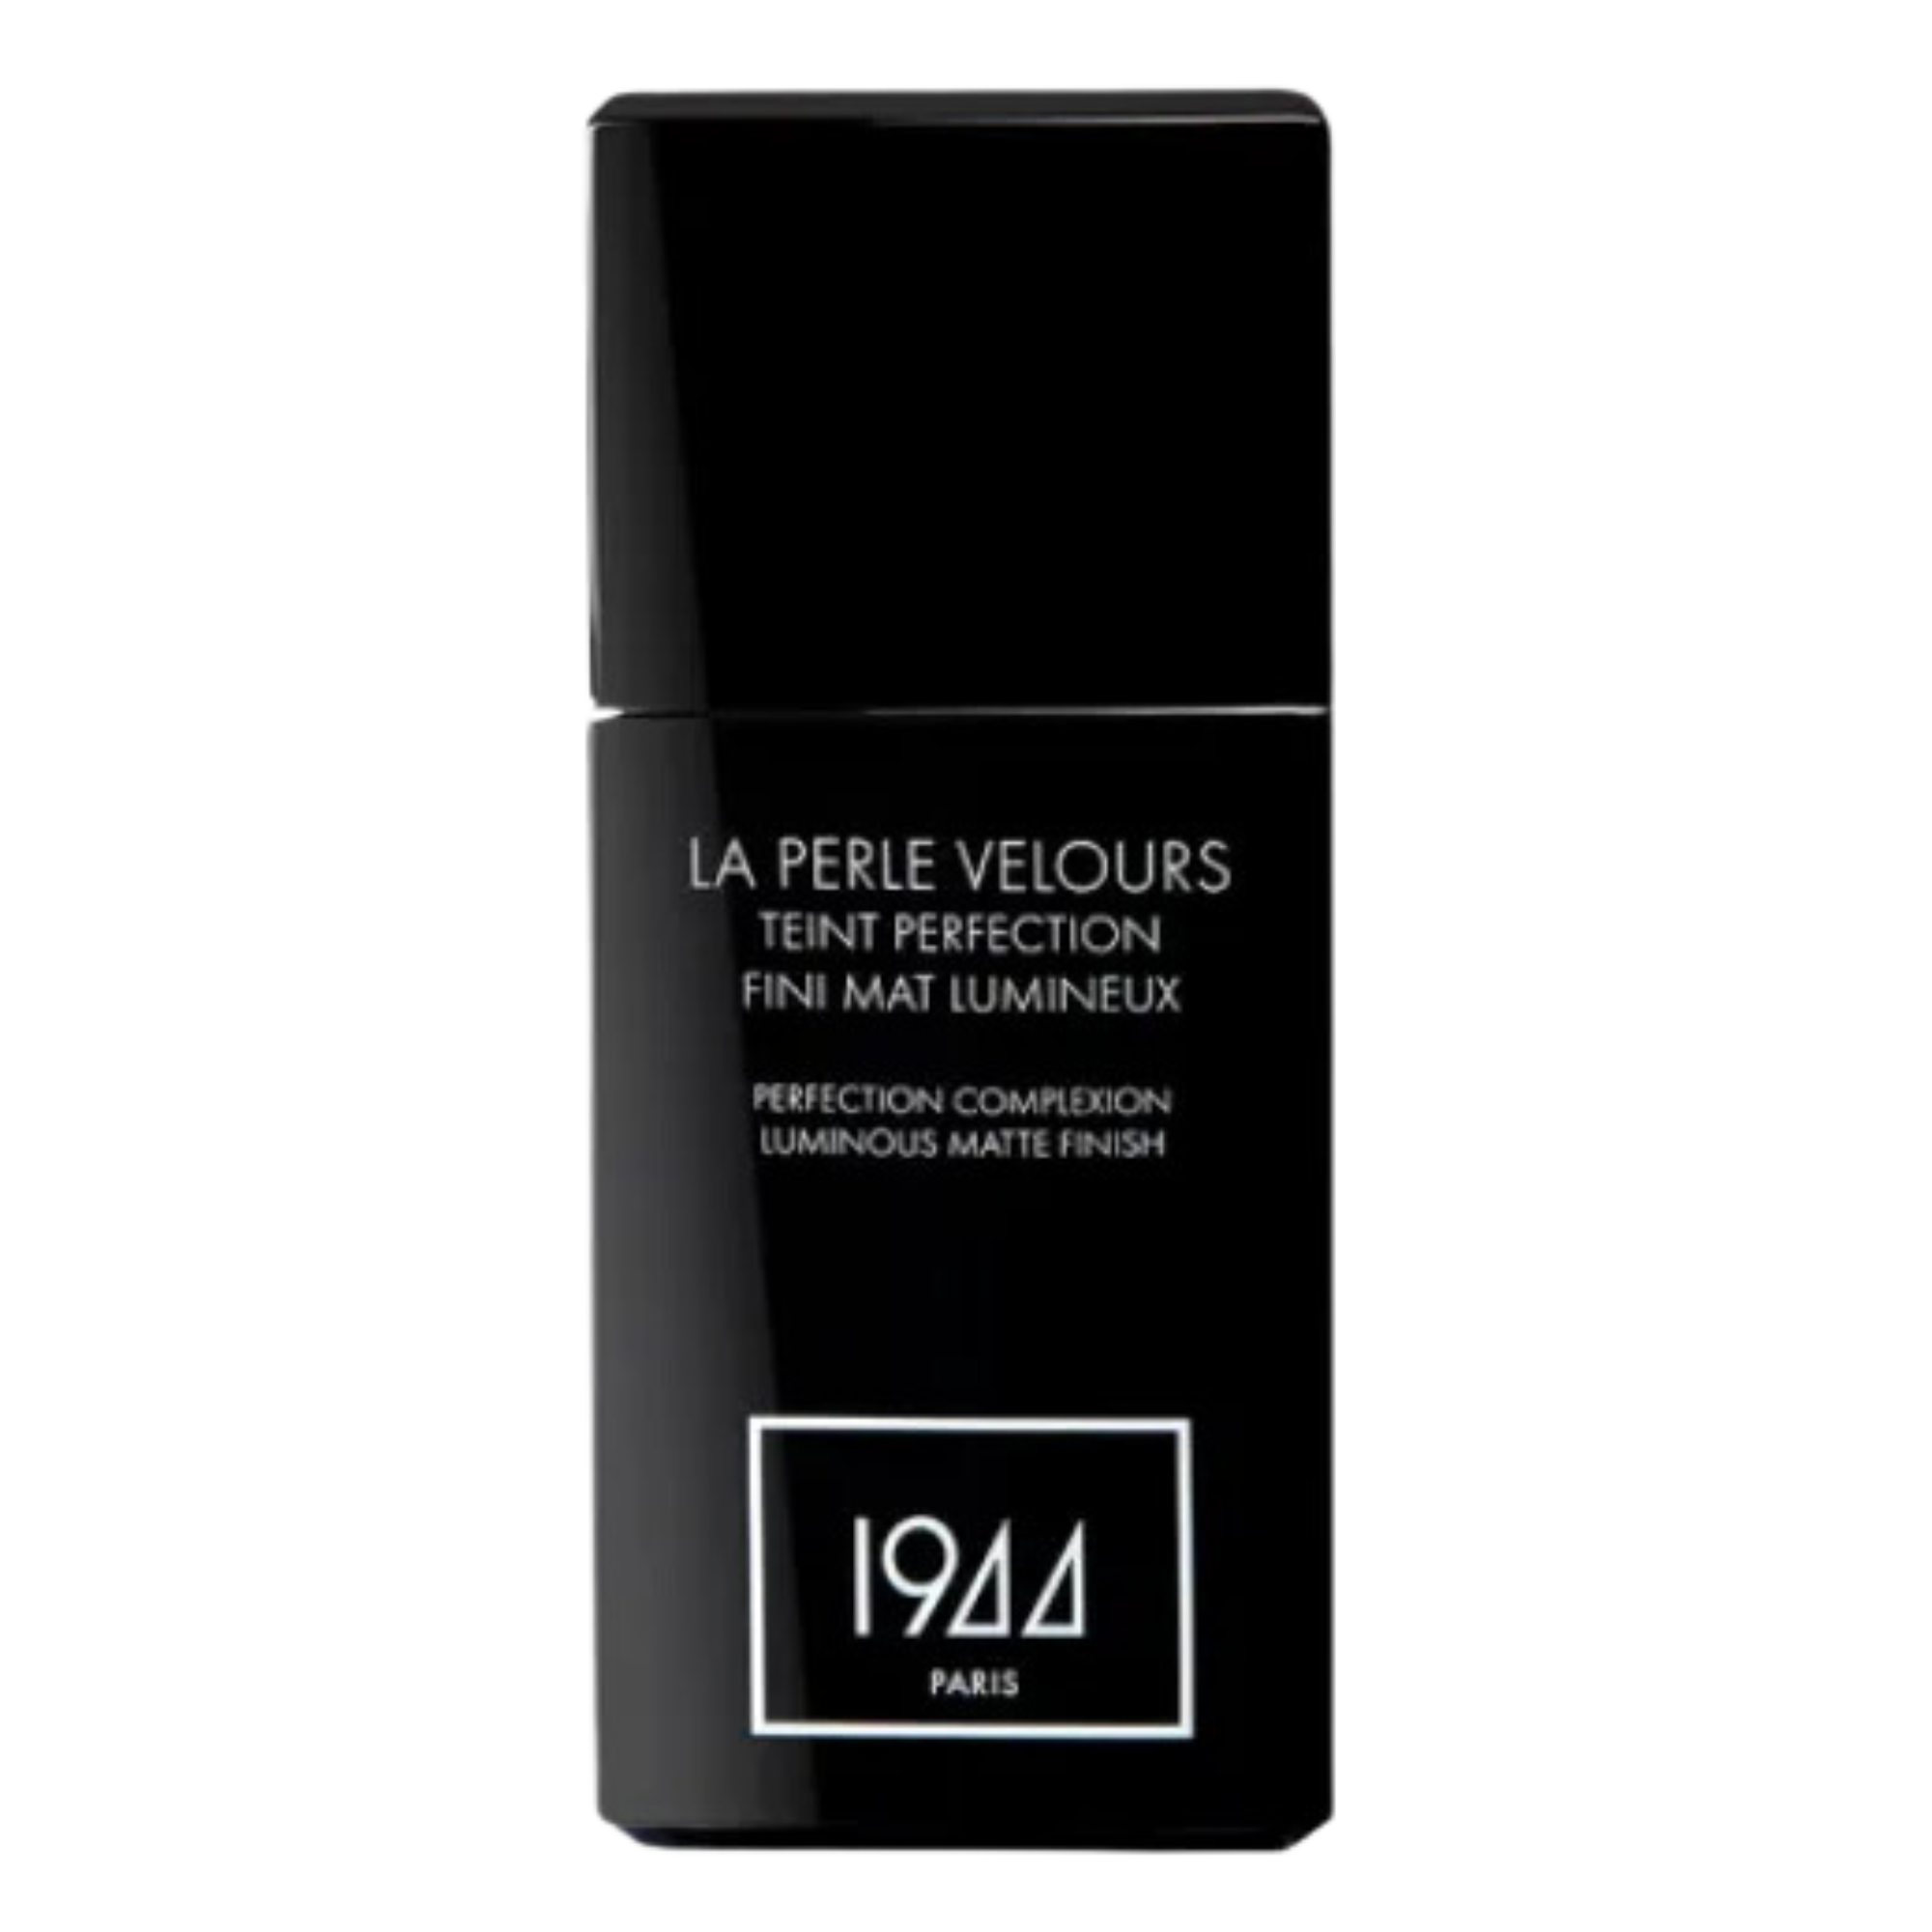 цена Тональный крем для лица ft206 бежевый каннель 1944 Paris La Perle Velours, 30 мл